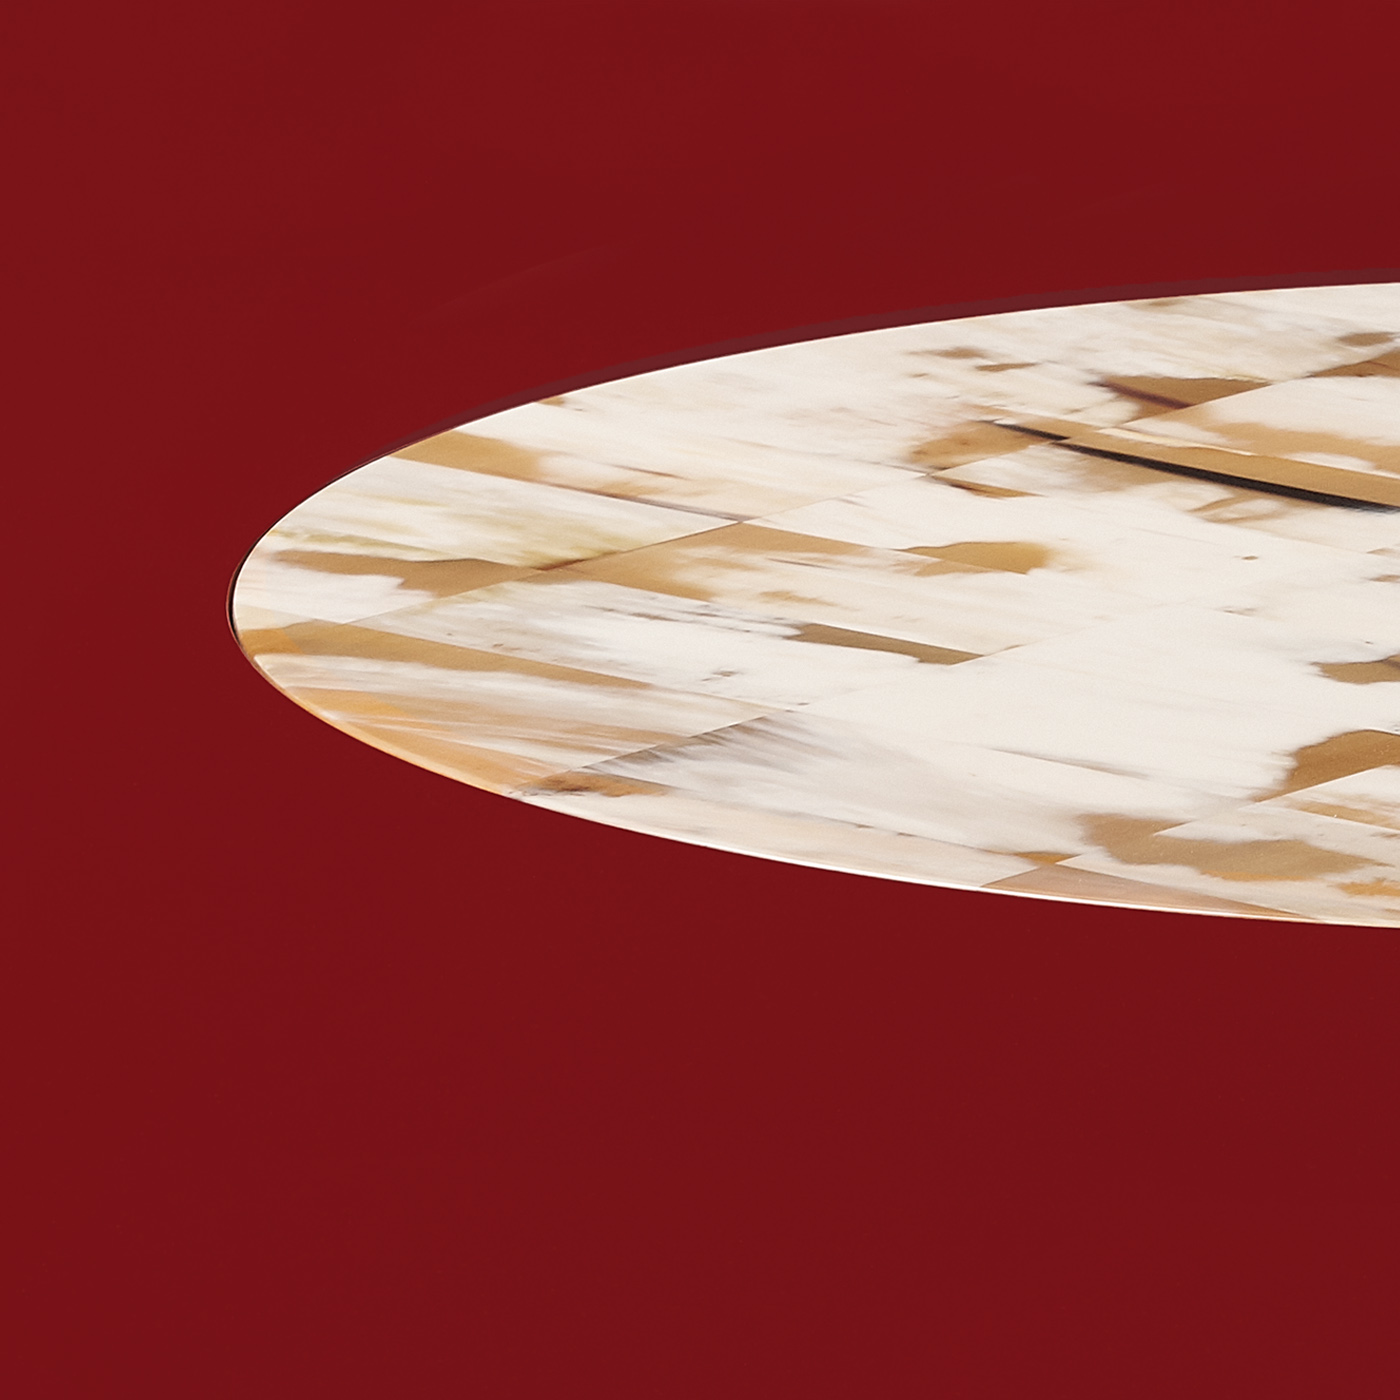 Tavoli e consolle - Tecla tavolo da pranzo in corno e legno laccato rosso dettaglio - Arcahorn